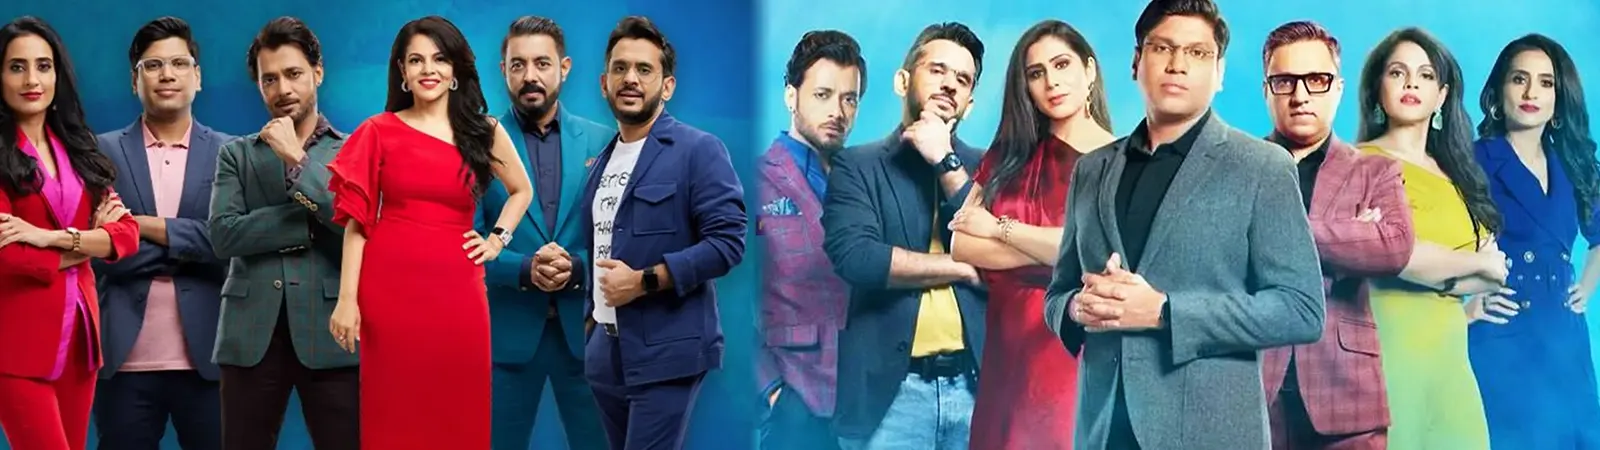 Shark Tank India Season 3 Update : Business Reality Show 'Shark Tank India' का Season 3 शुरू होने वाला है!!! Judges से लेकर बाकी सारी Details जानें